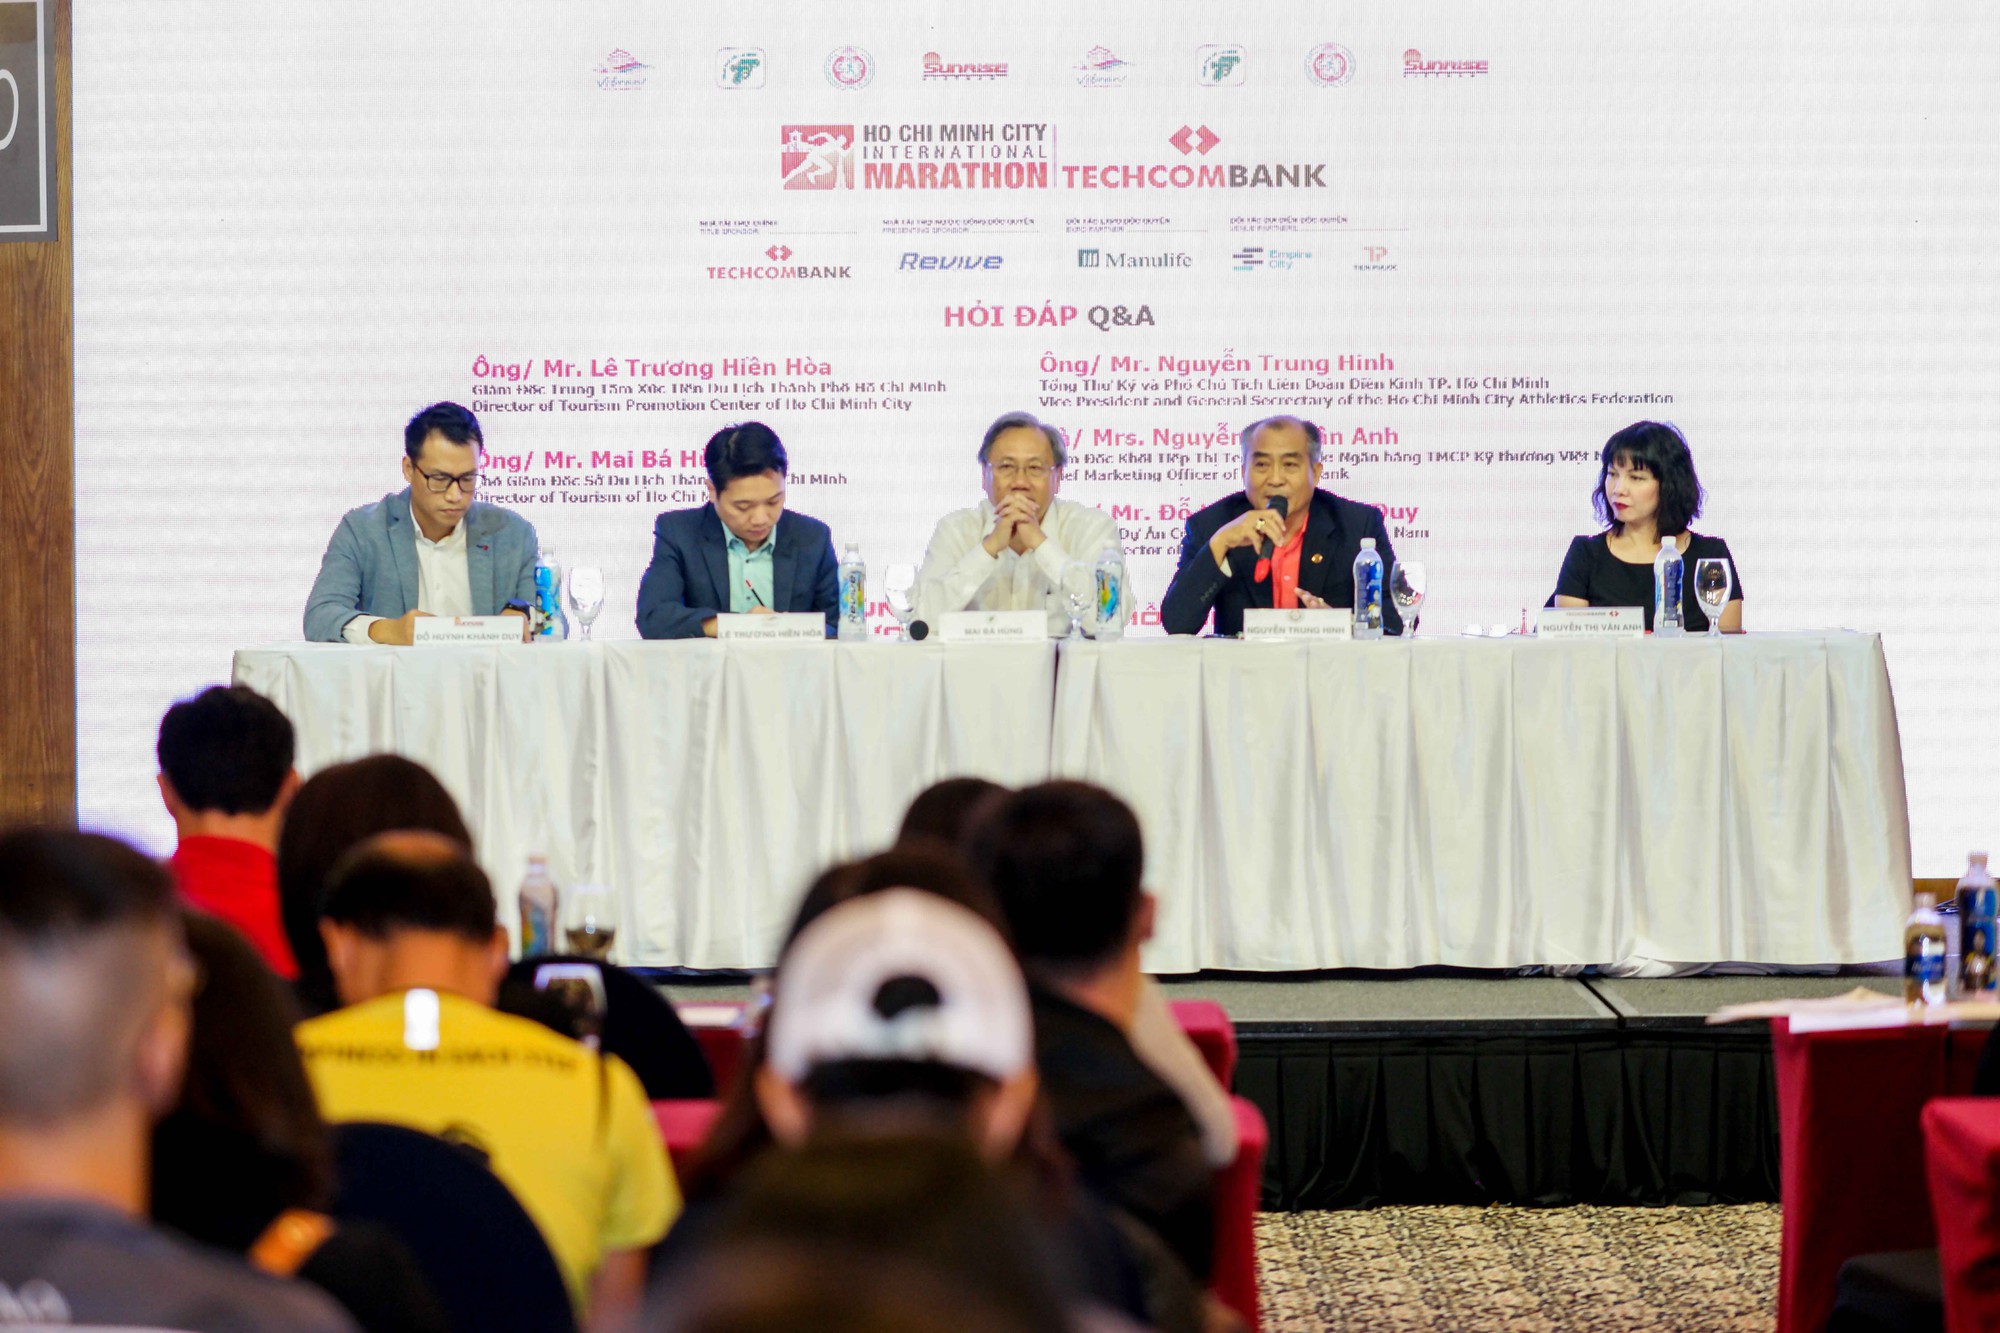 Đường chạy Techcombank HCMC International Marathon 2018 sẽ đi qua Dinh Độc Lập - Ảnh 6.